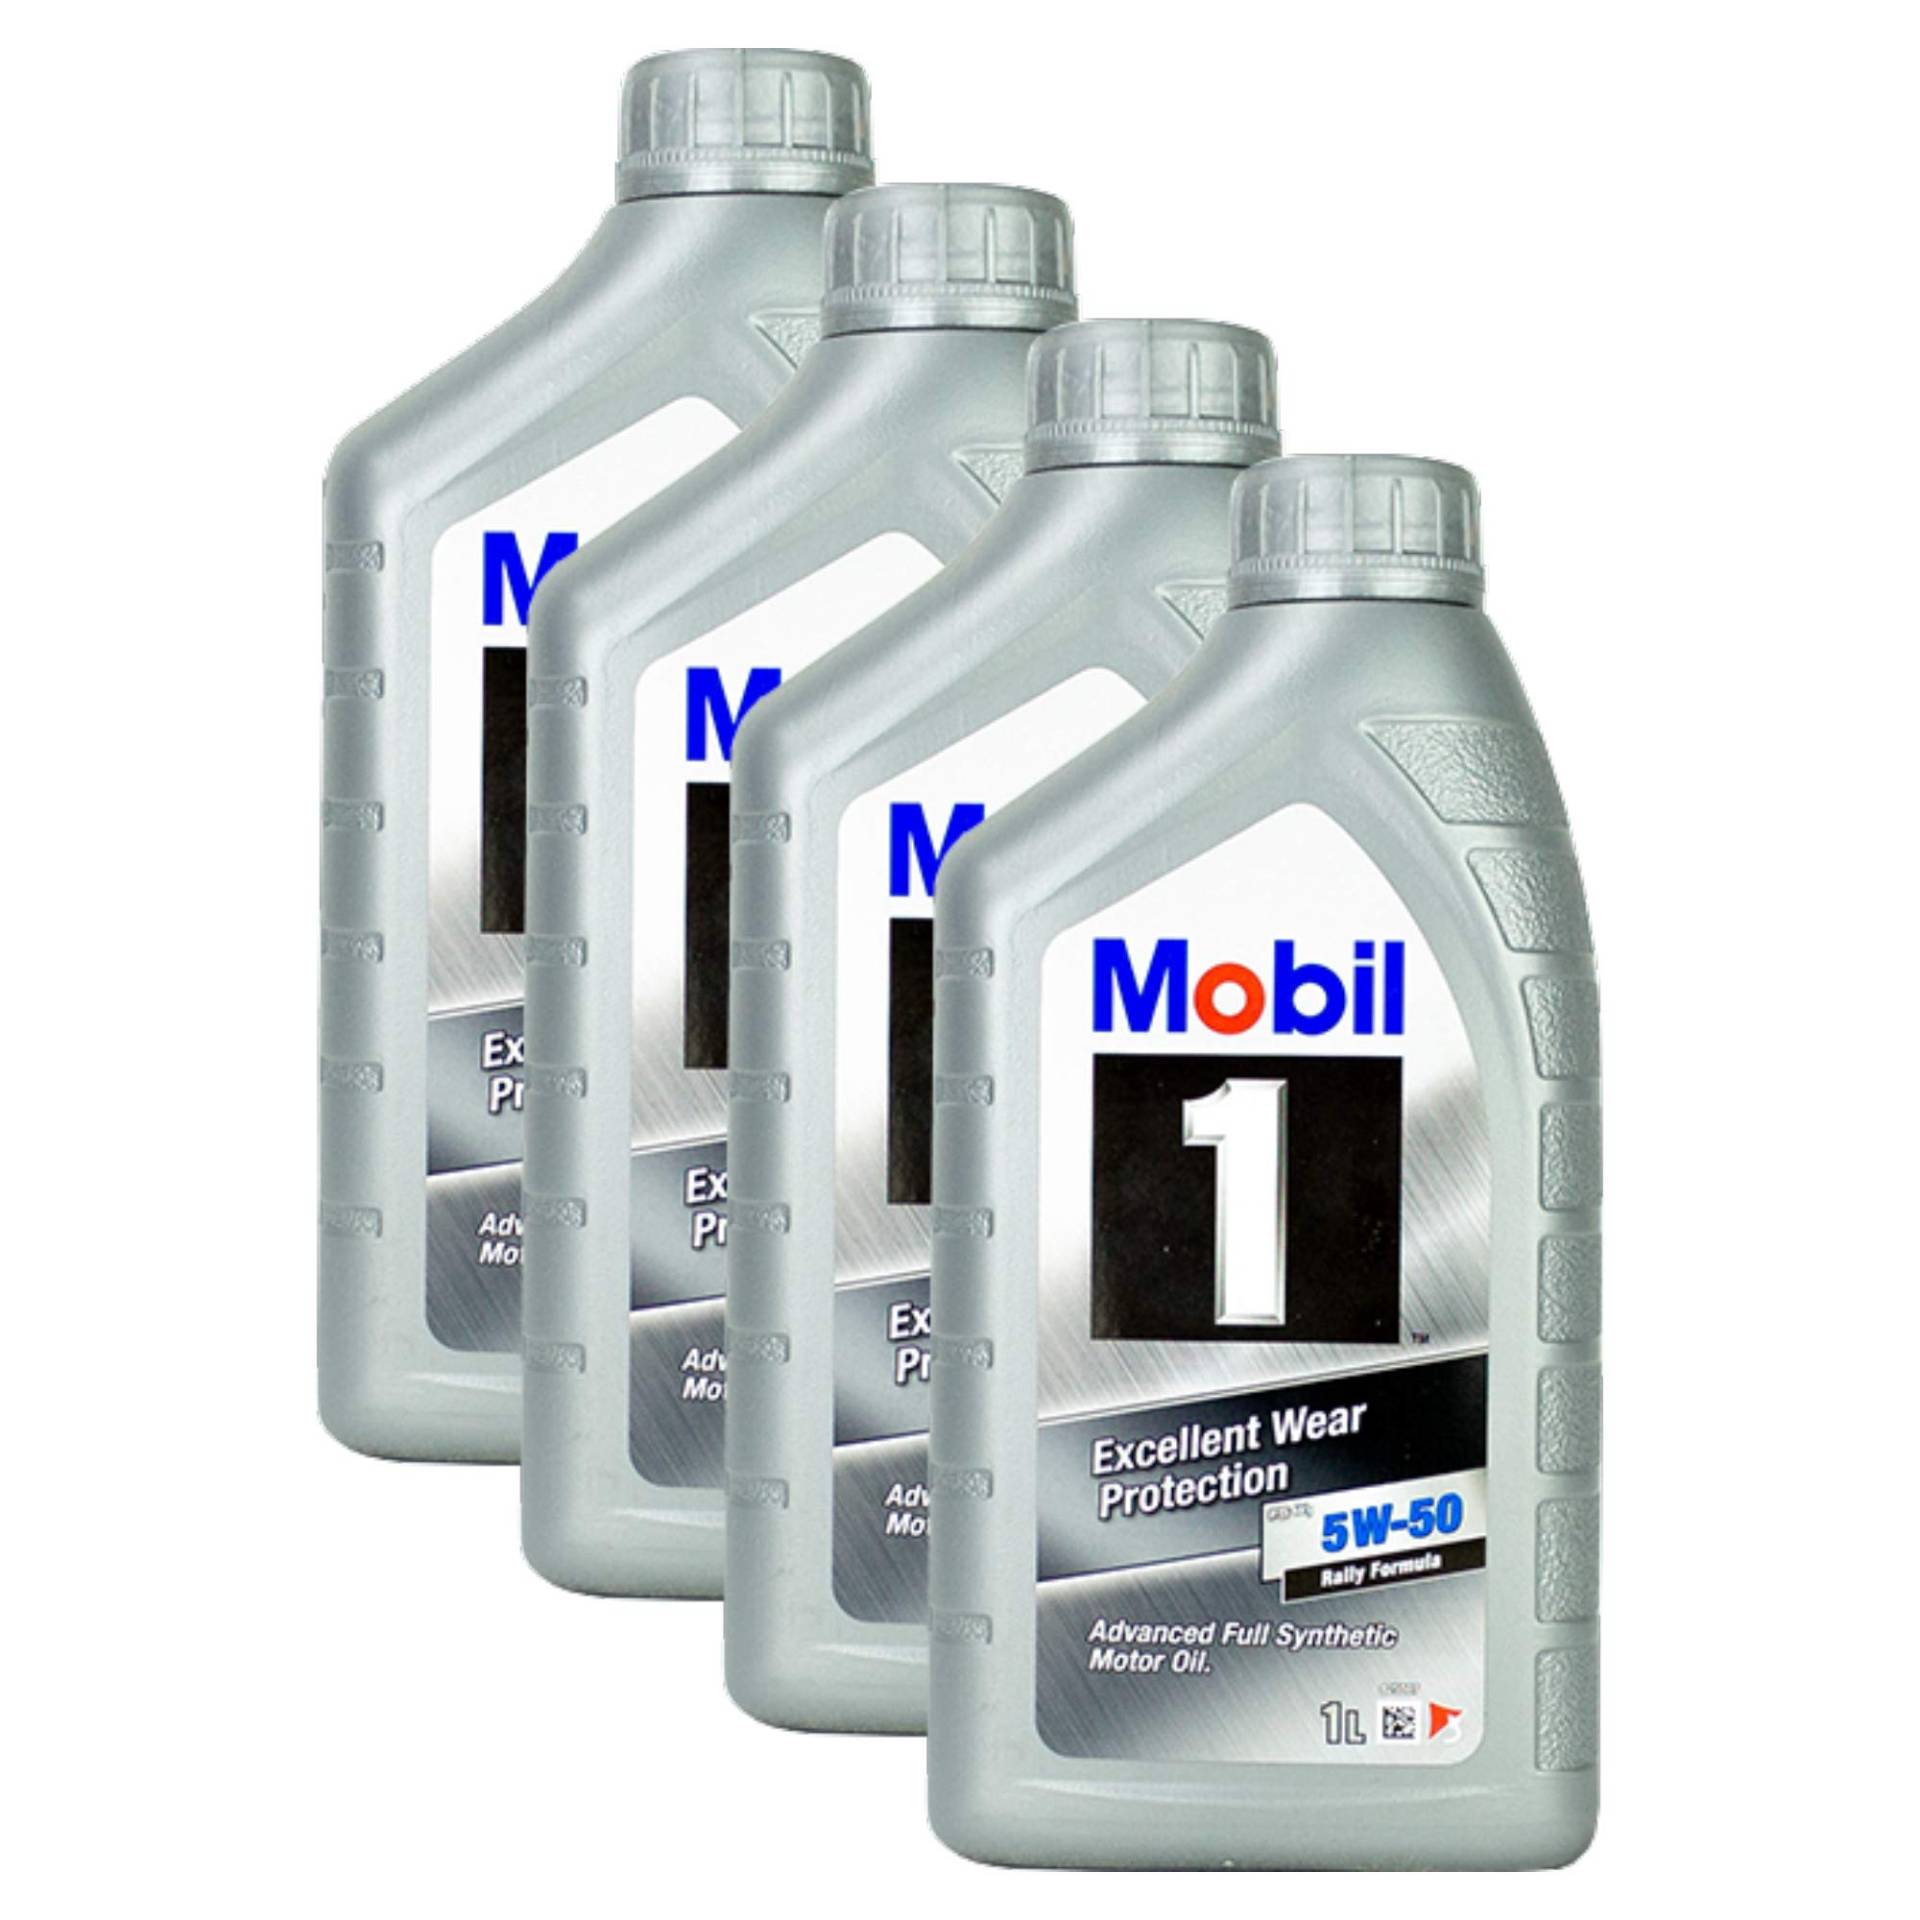 Mobil 1 FS X1 Motoröl Öl 5W-50 5W50 PORSCHE A40 MB 229.3 / 229.1 - 5L 5 Liter von Mobil